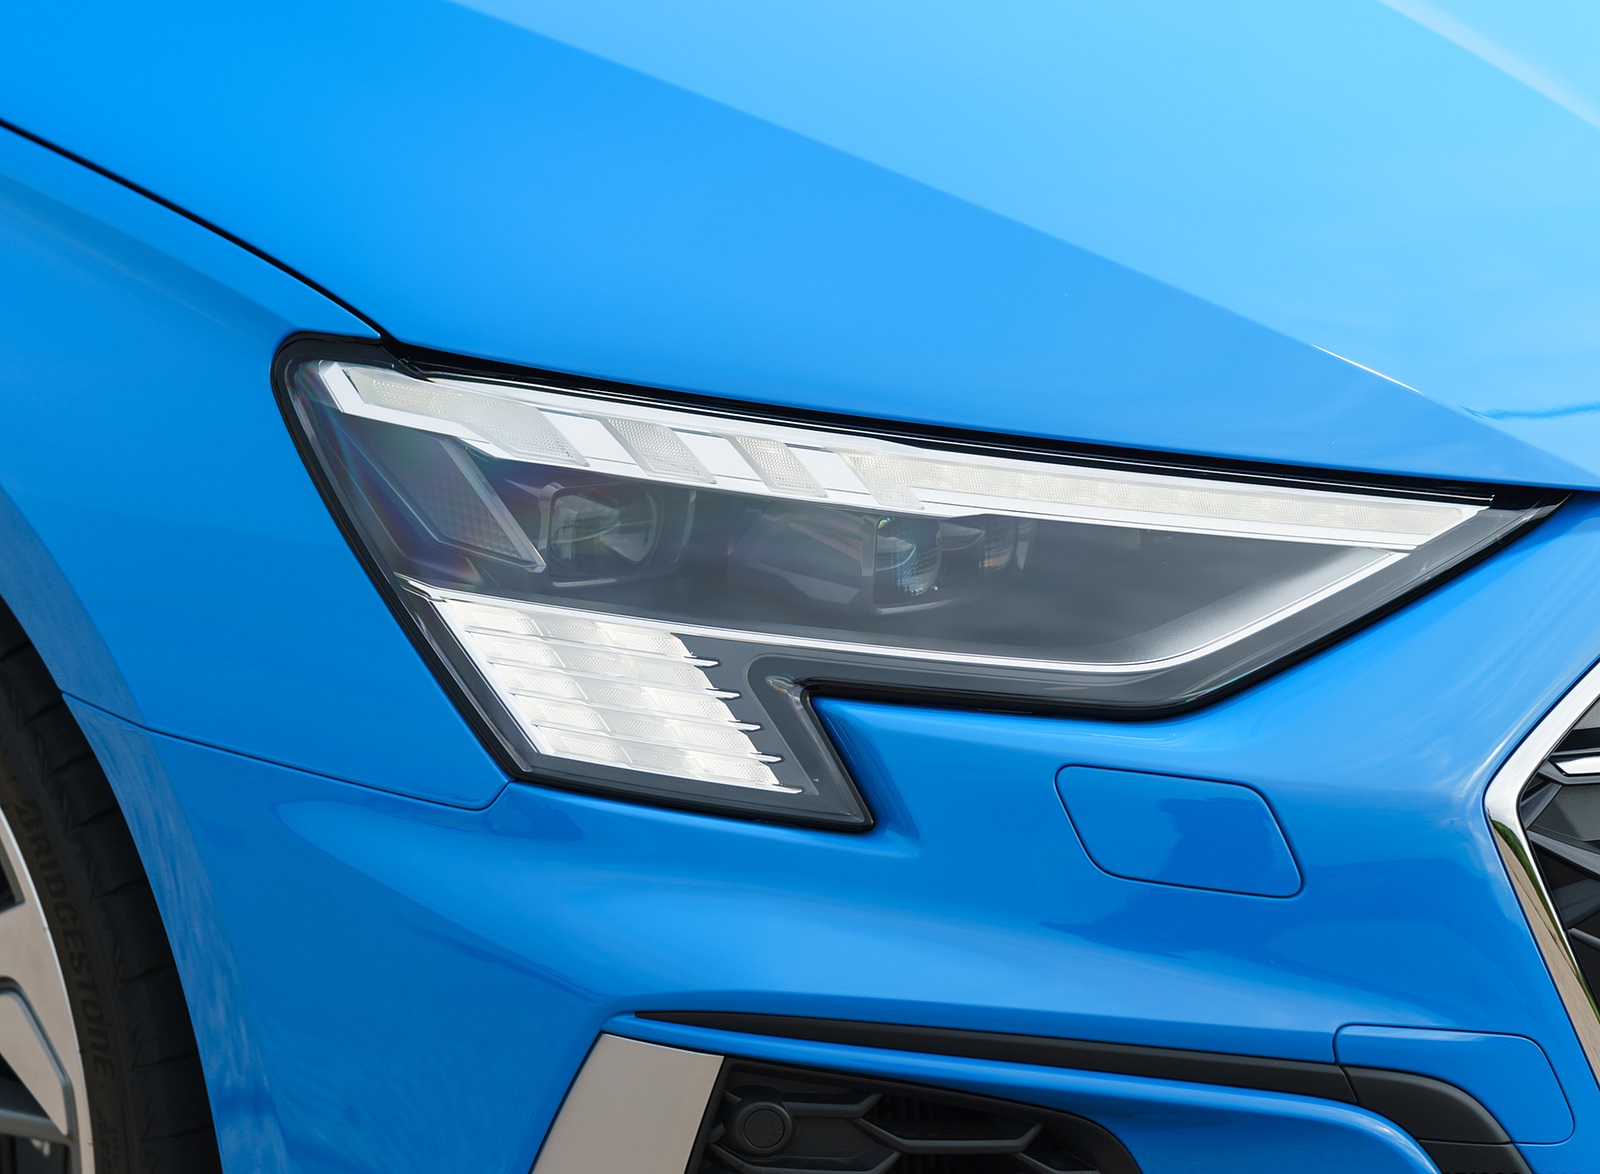 2021 Audi S3 (UK-Spec) Headlight Wallpapers  #57 of 110